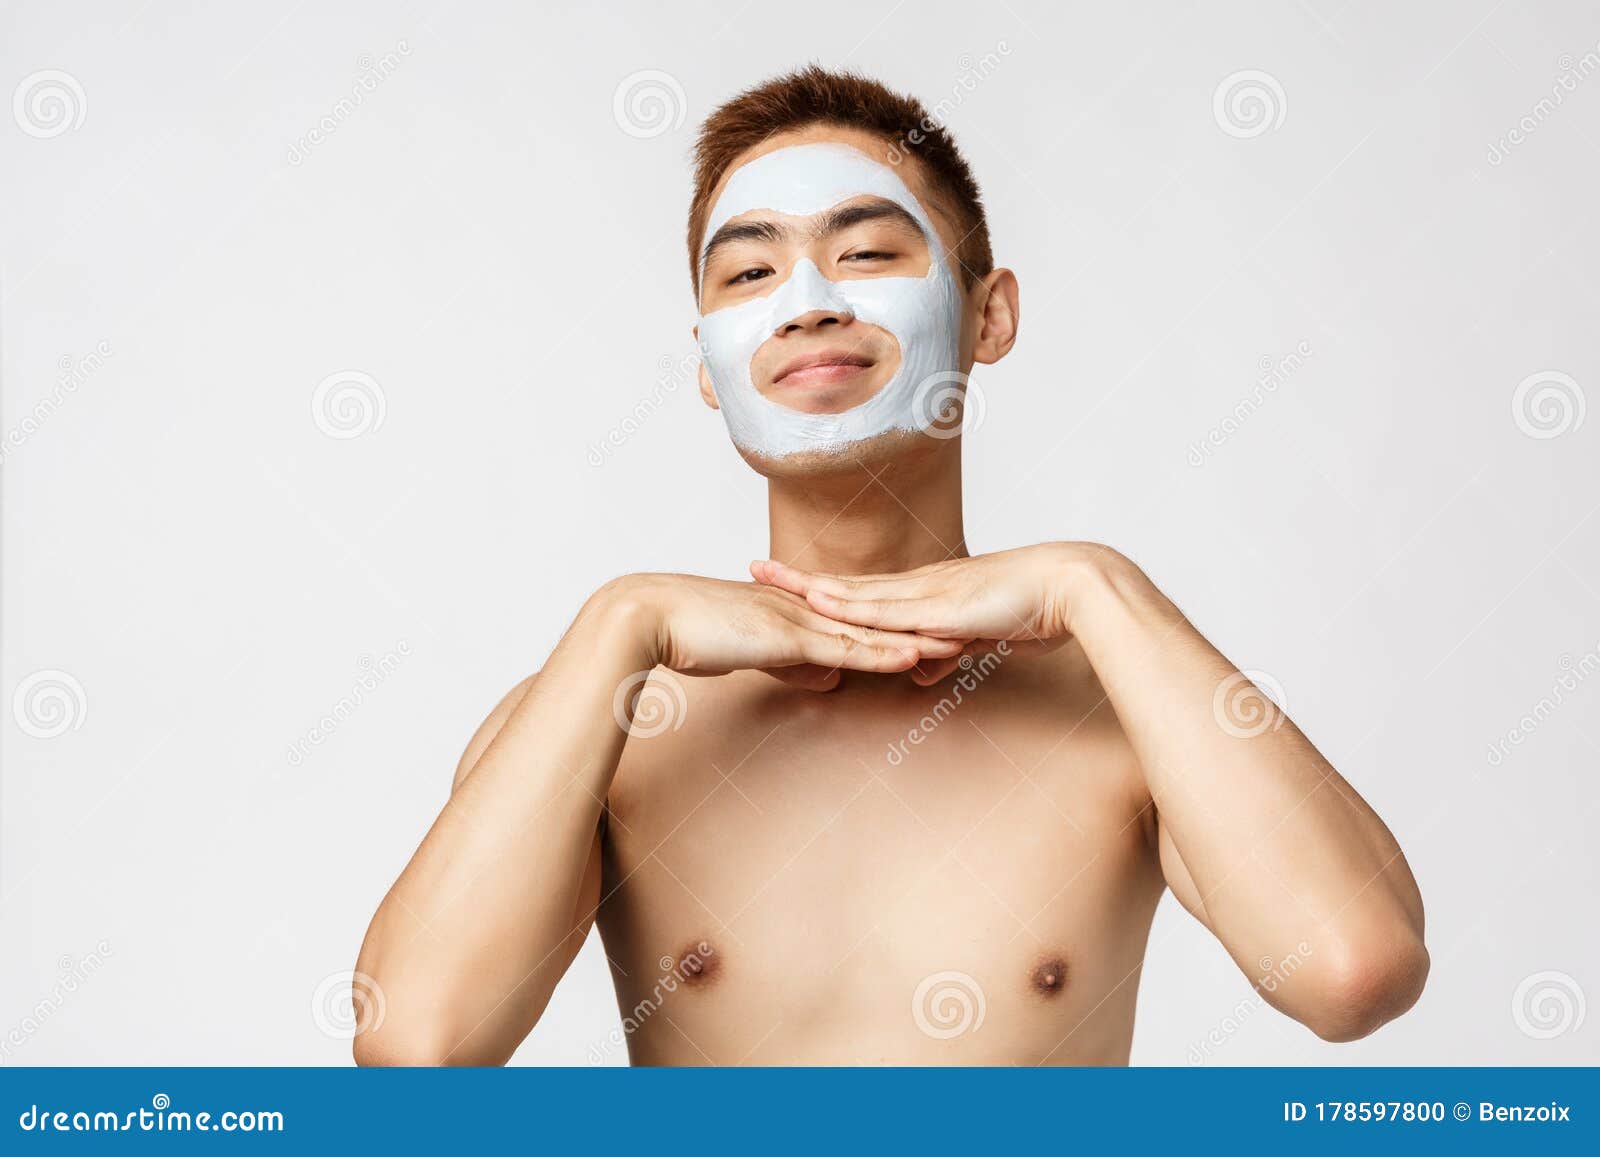 美容、护肤和Spa概念可爱又傻的裸体亚洲男人的画像，满脸微笑，戴着  image